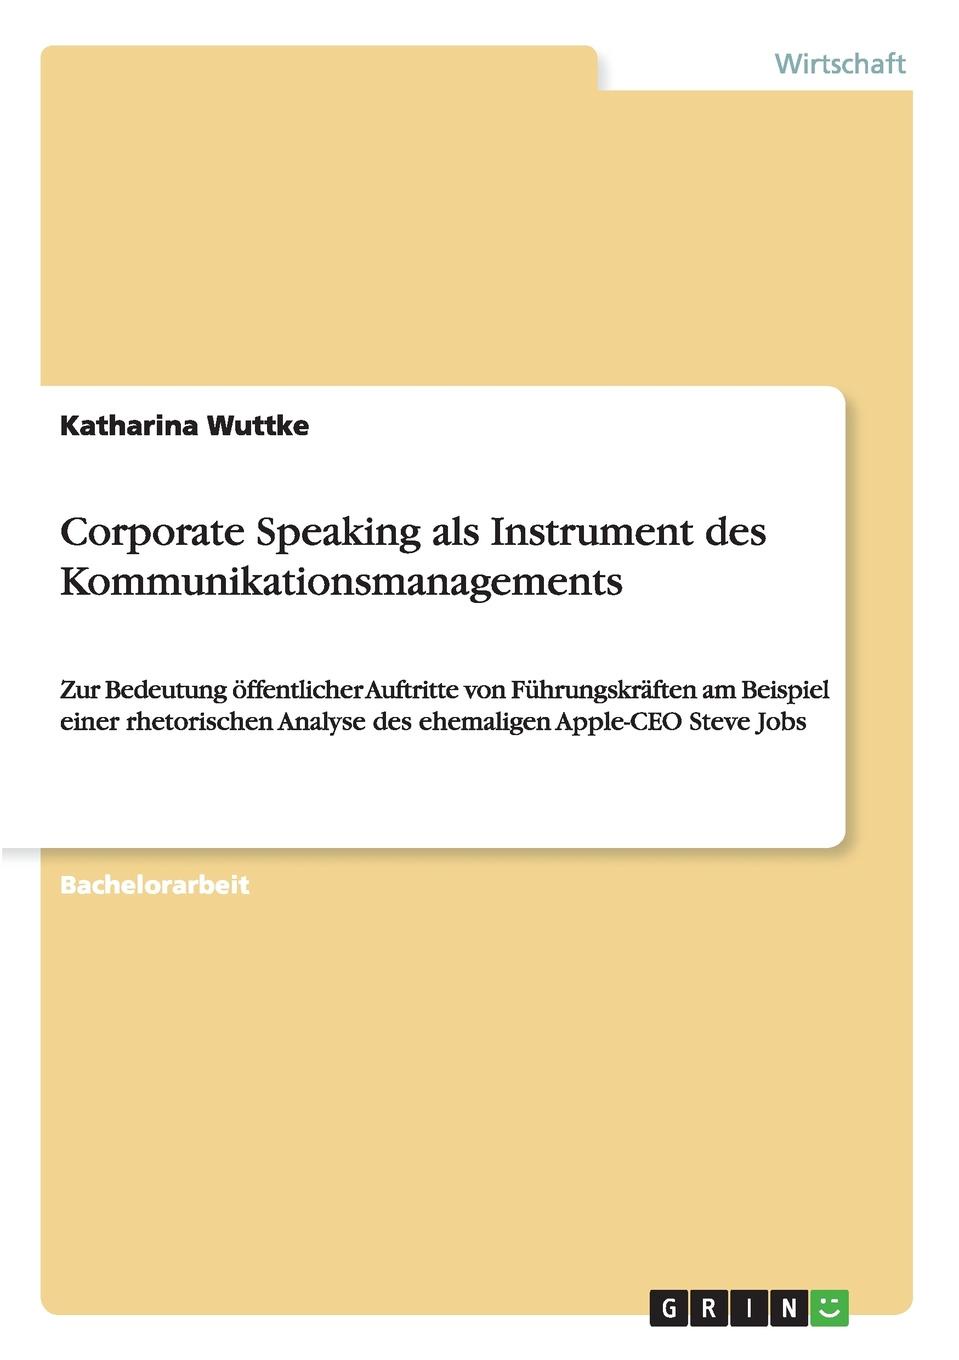 Corporate Speaking als Instrument des Kommunikationsmanagements